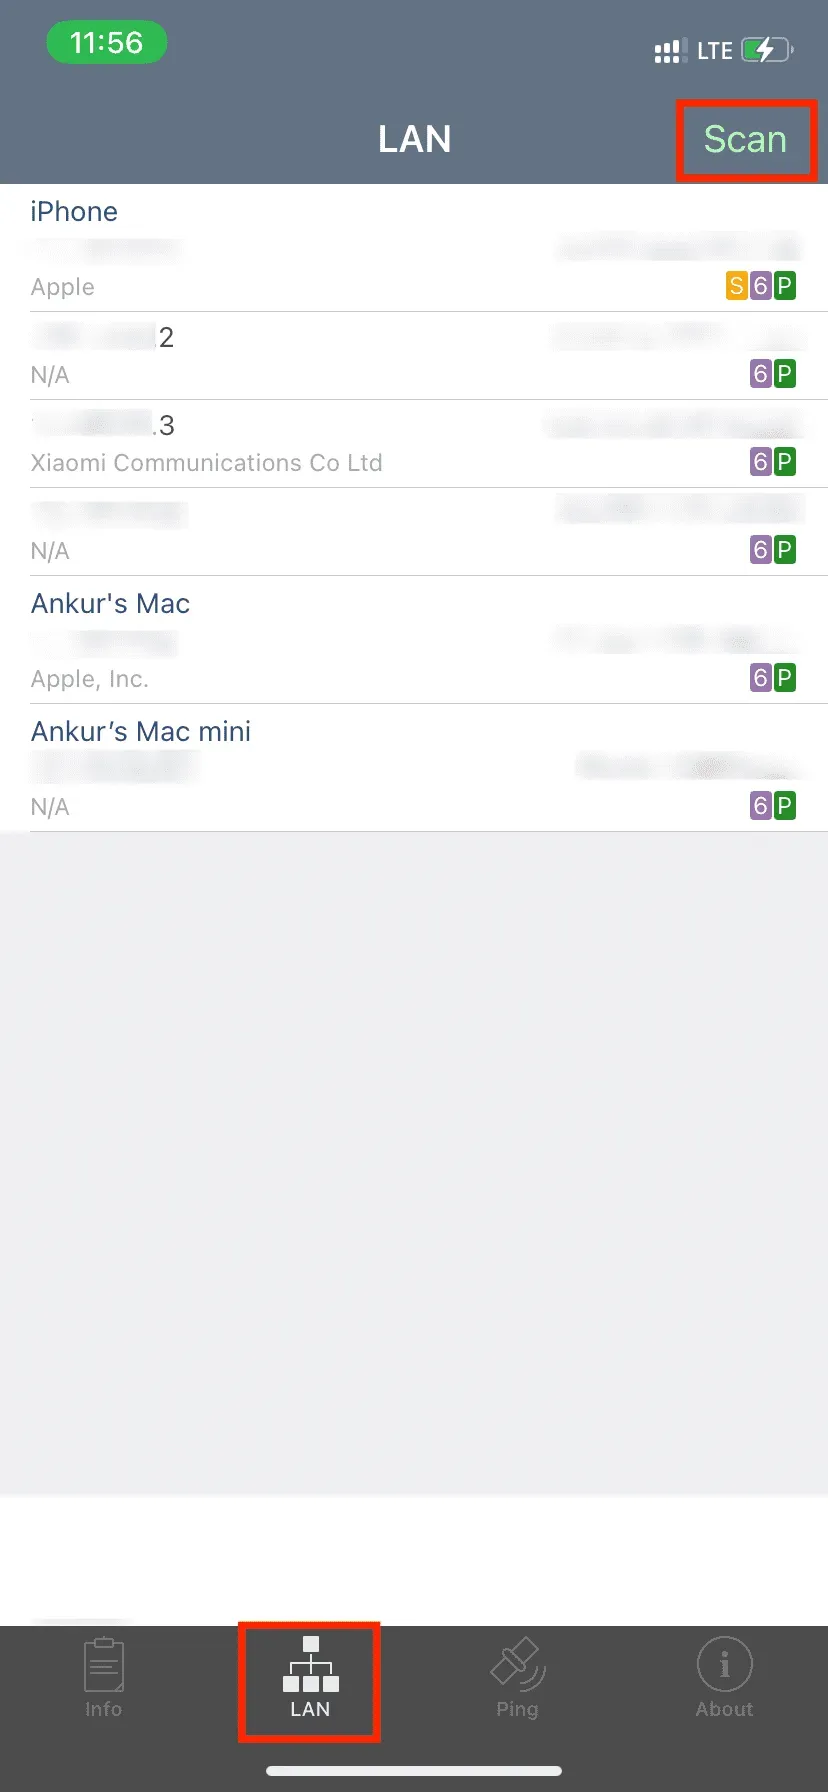 Application Network Analyzer affichant tous les appareils connectés à votre iPhone Hotspot